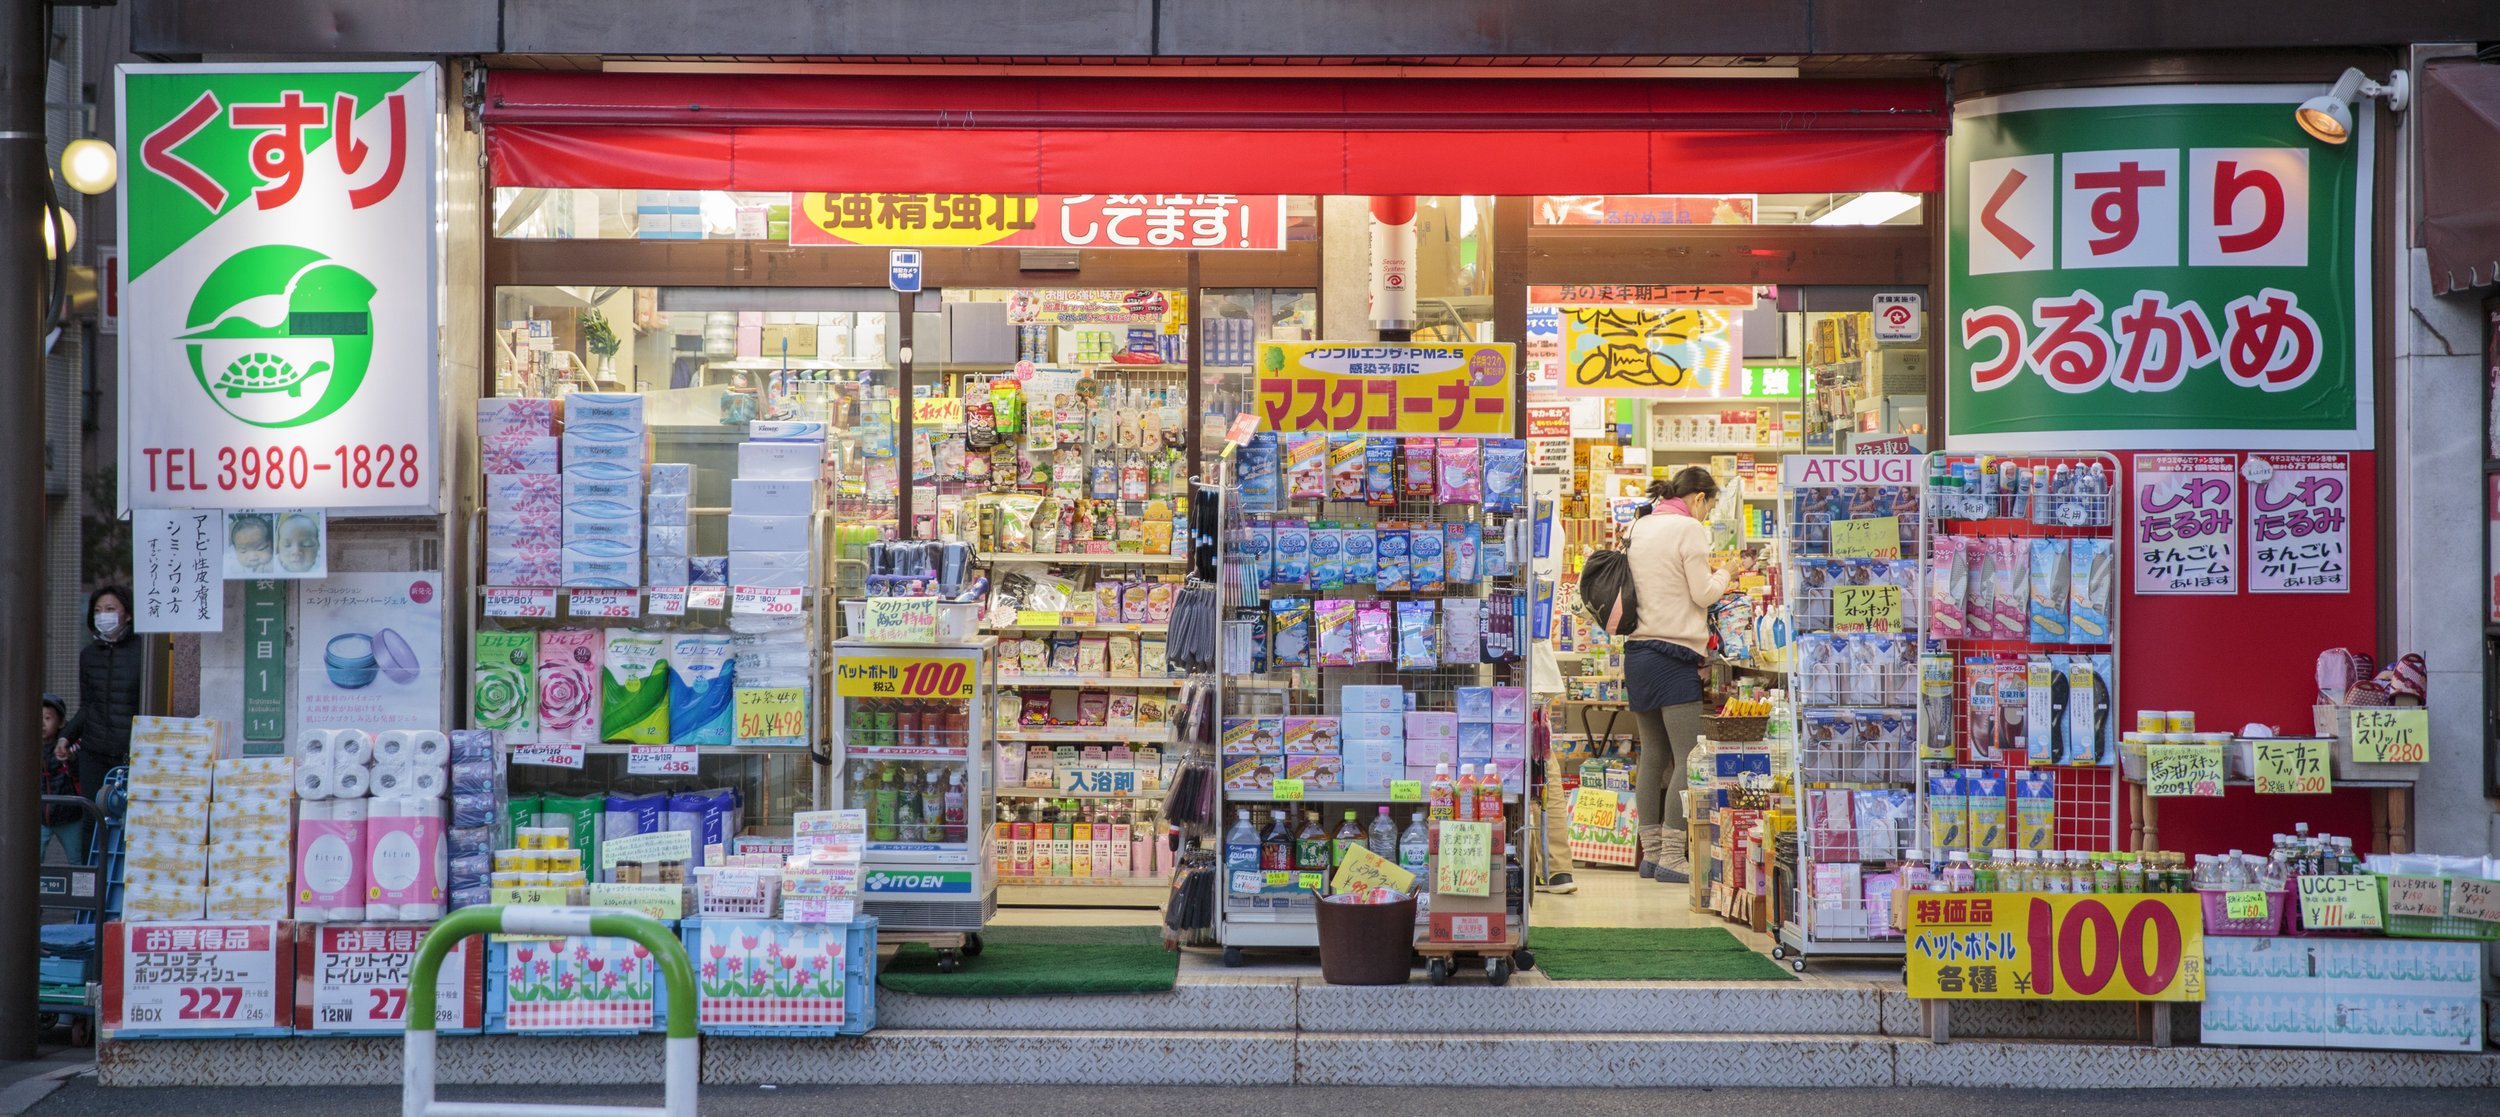 drug-storefront-japan.jpg